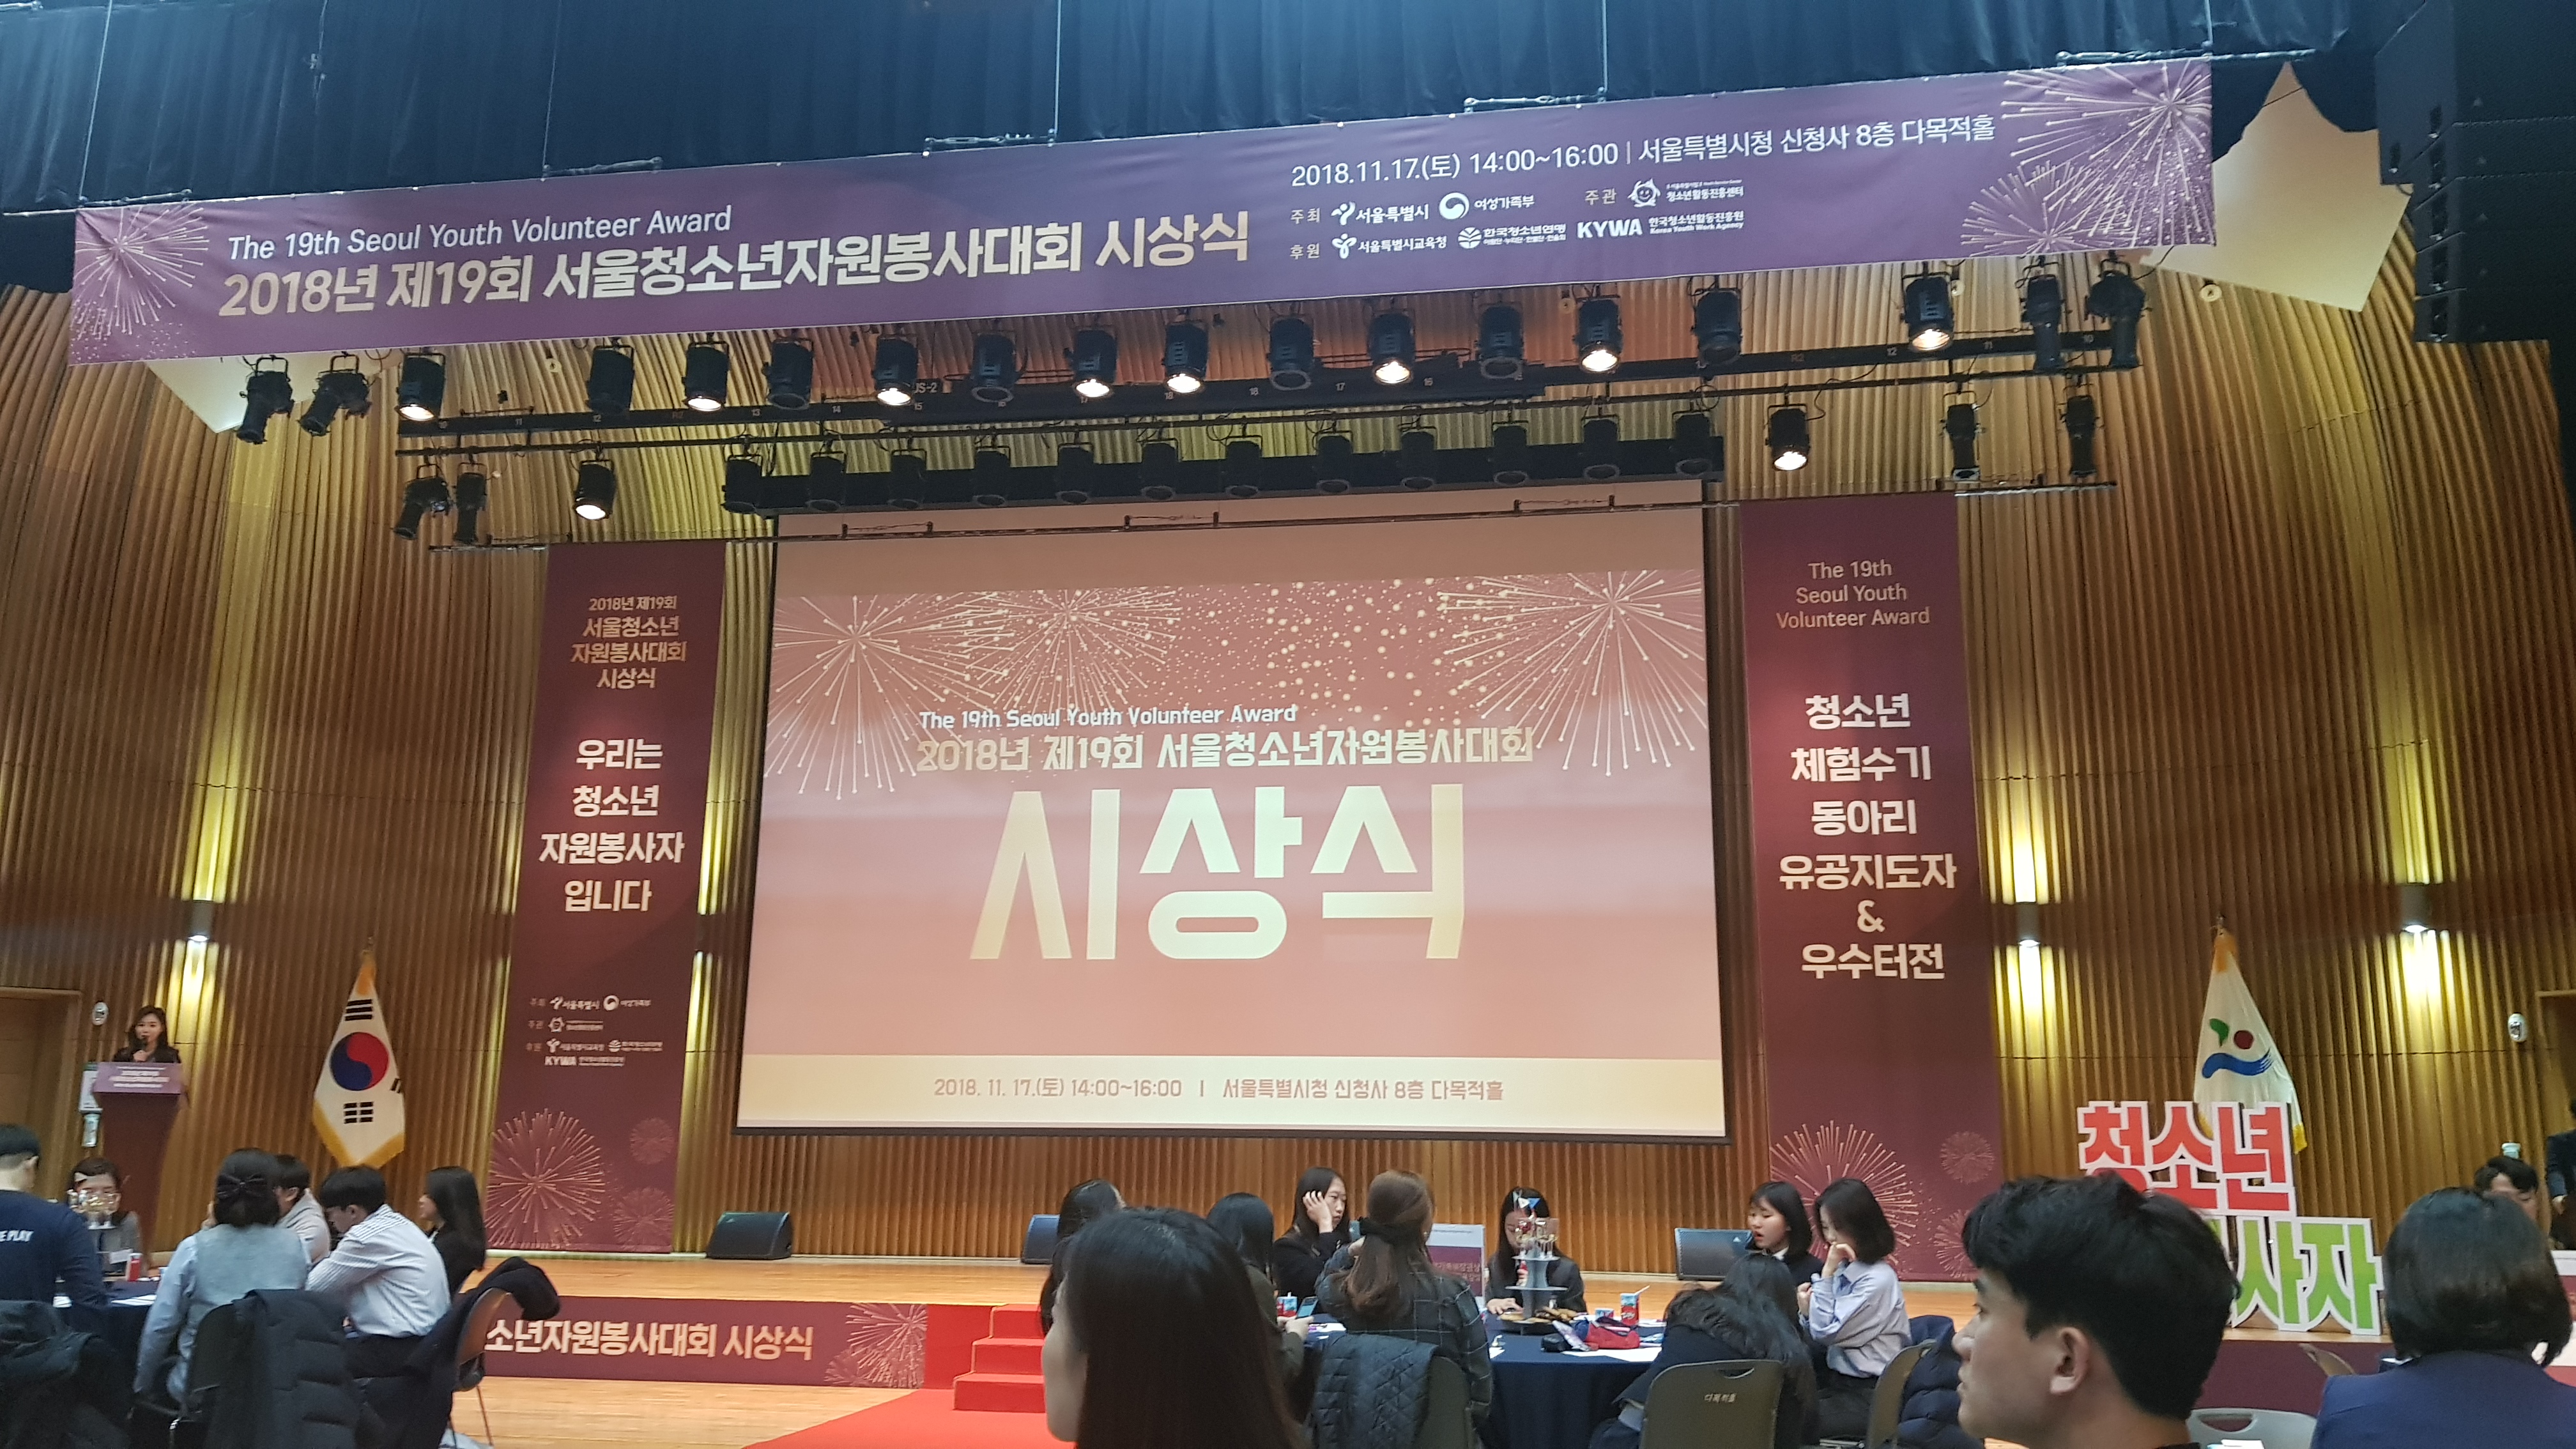 2018년 제19회 서울청소년자원봉사대회 시상식장 전체 모습